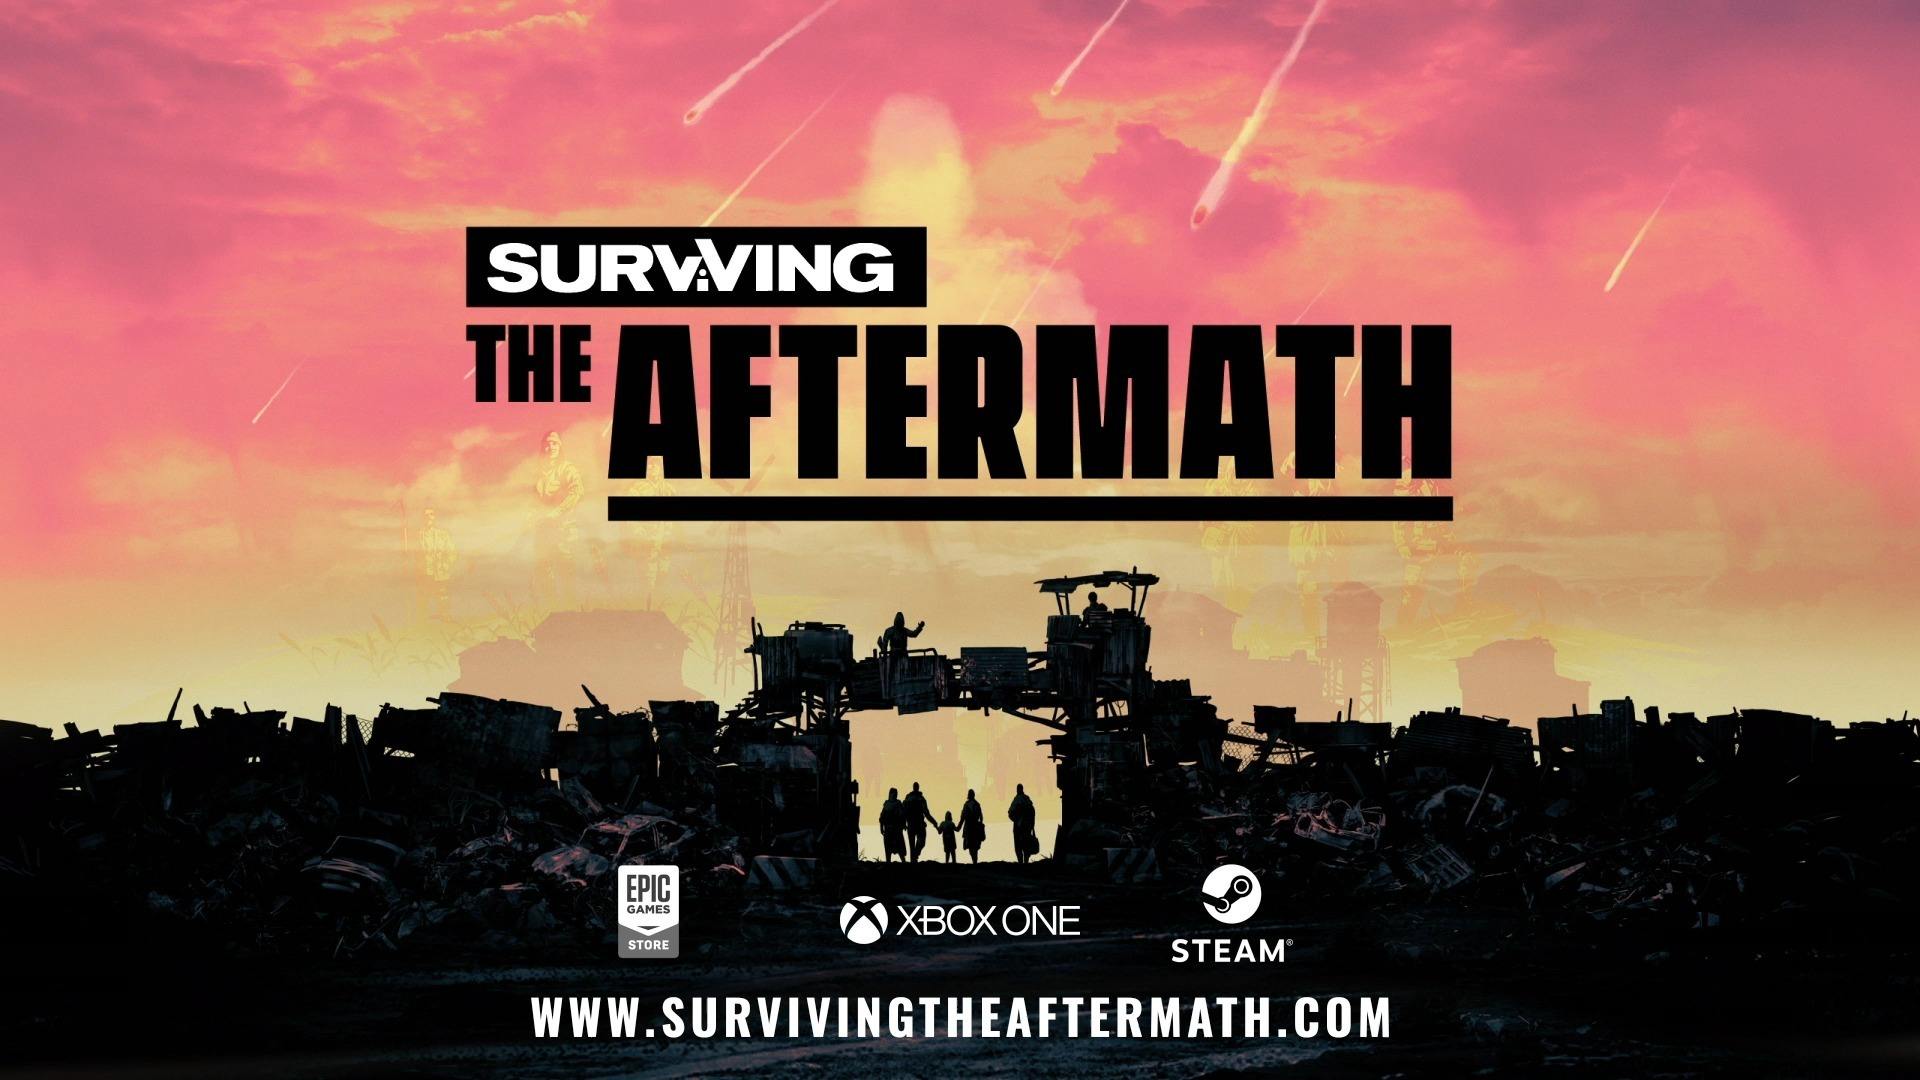 《Surviving the Aftermath》破灭希望扩展包将于11 月登陆PS4、Xbox One 和 PC  - 预告片